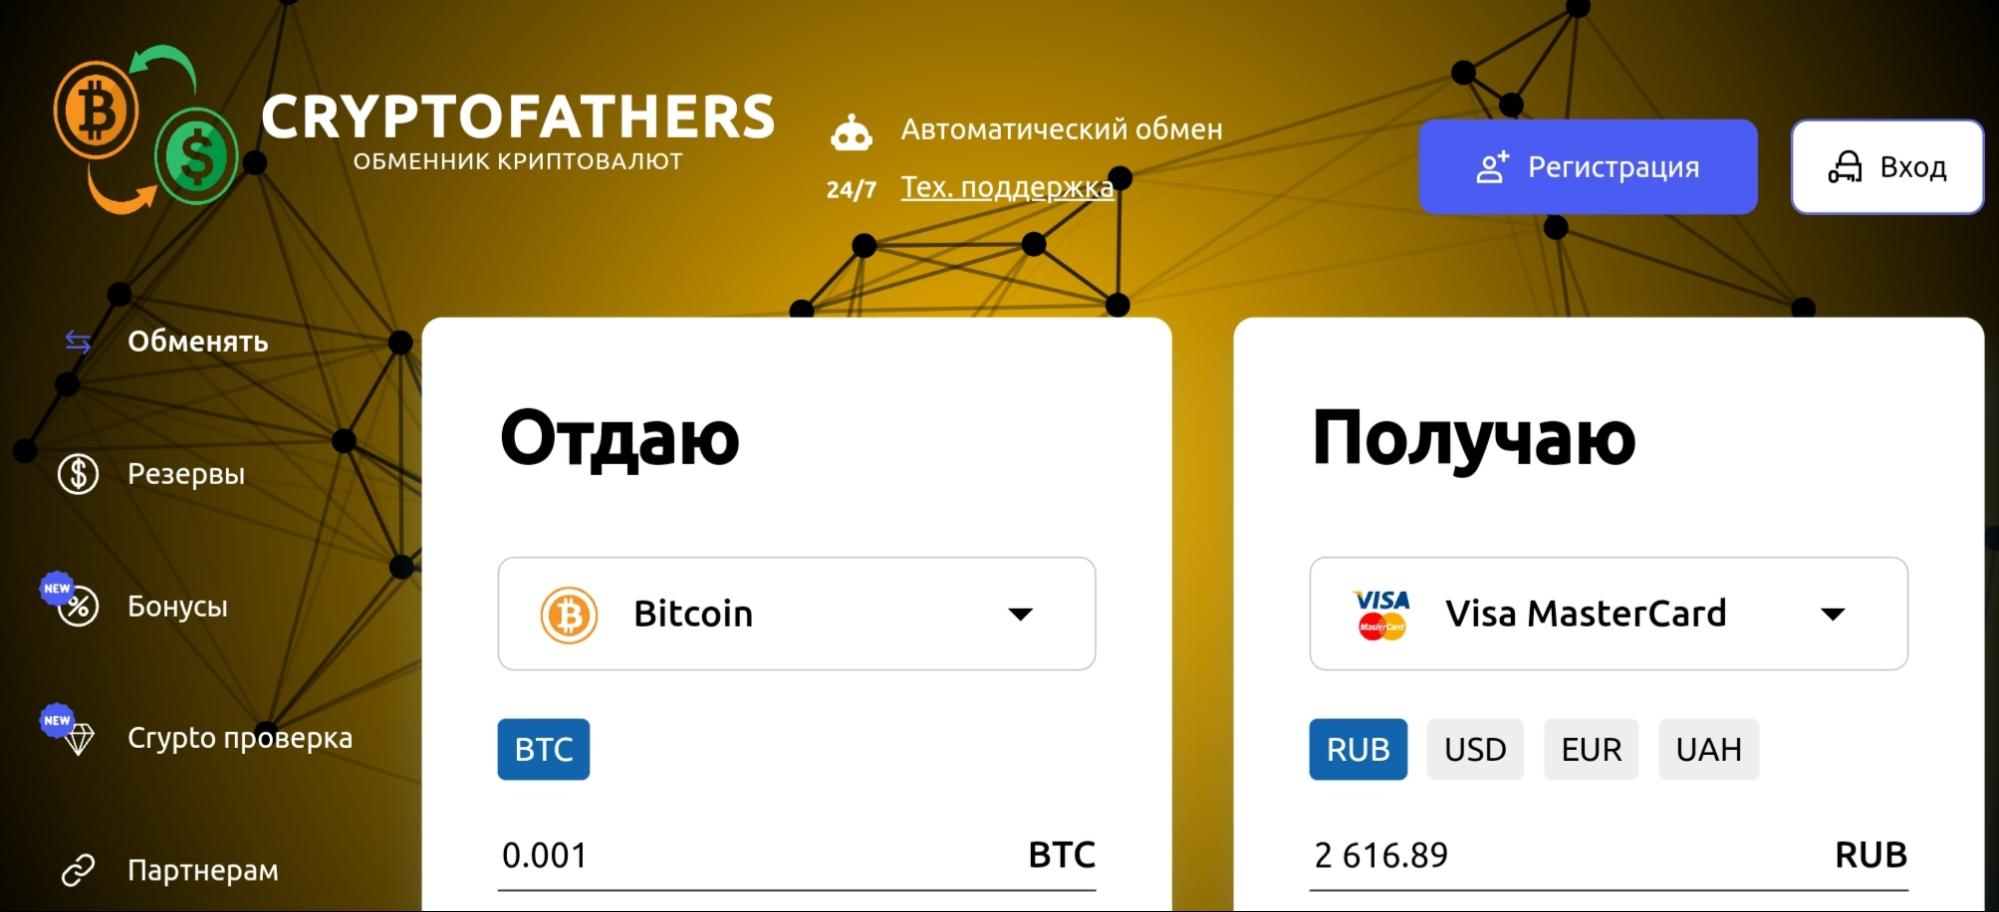 Cryptofathers.com